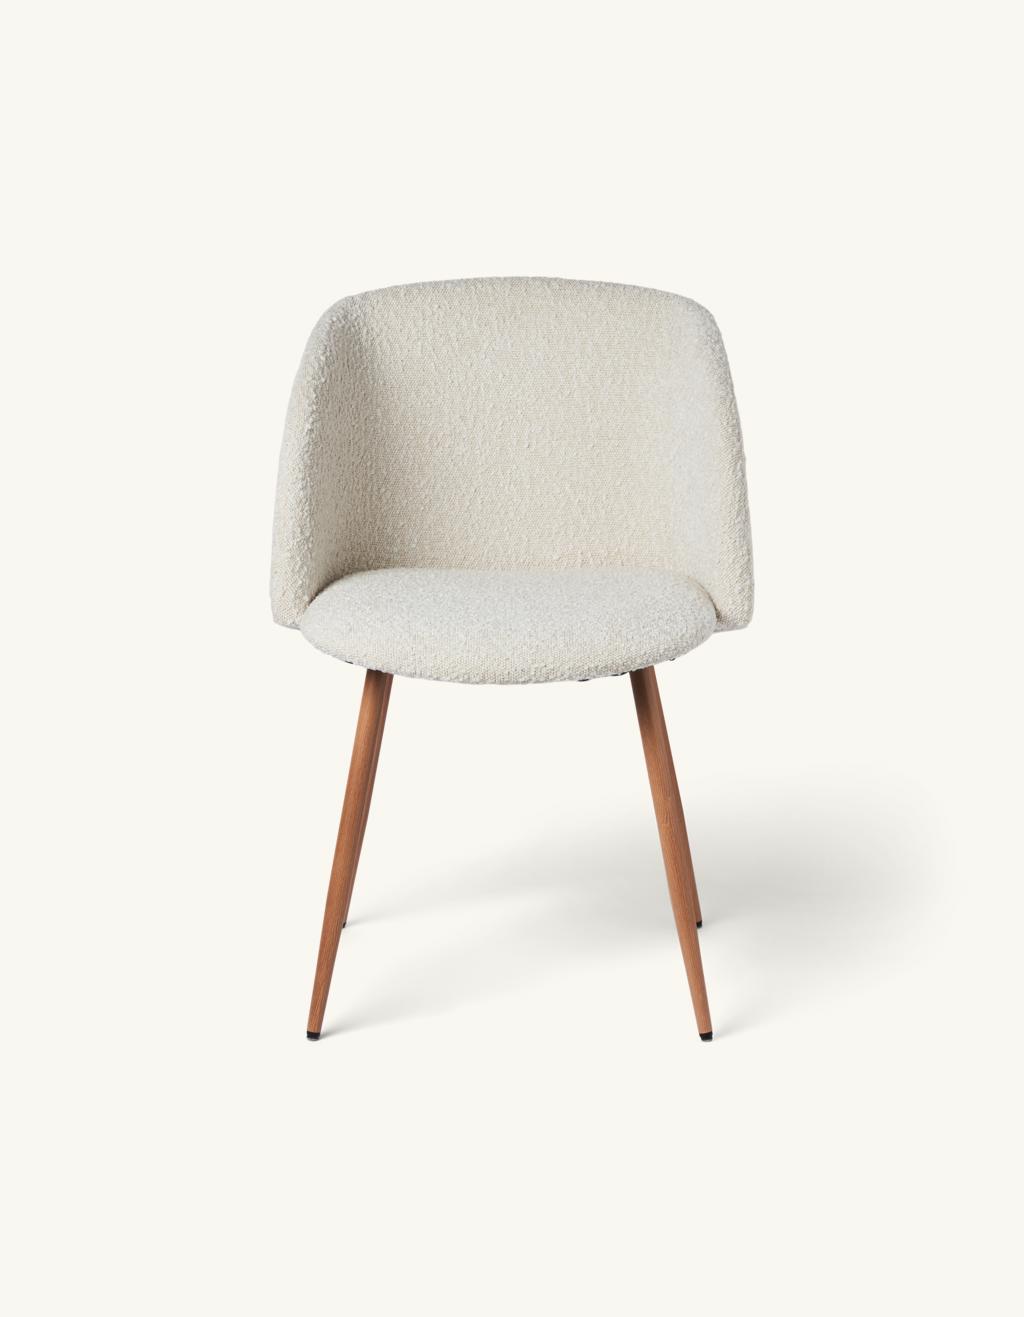 Stol med bouclé stof | Jern/polyester/polyurethan. 50 x 41,5 x 81 cm. Søstrene Grene